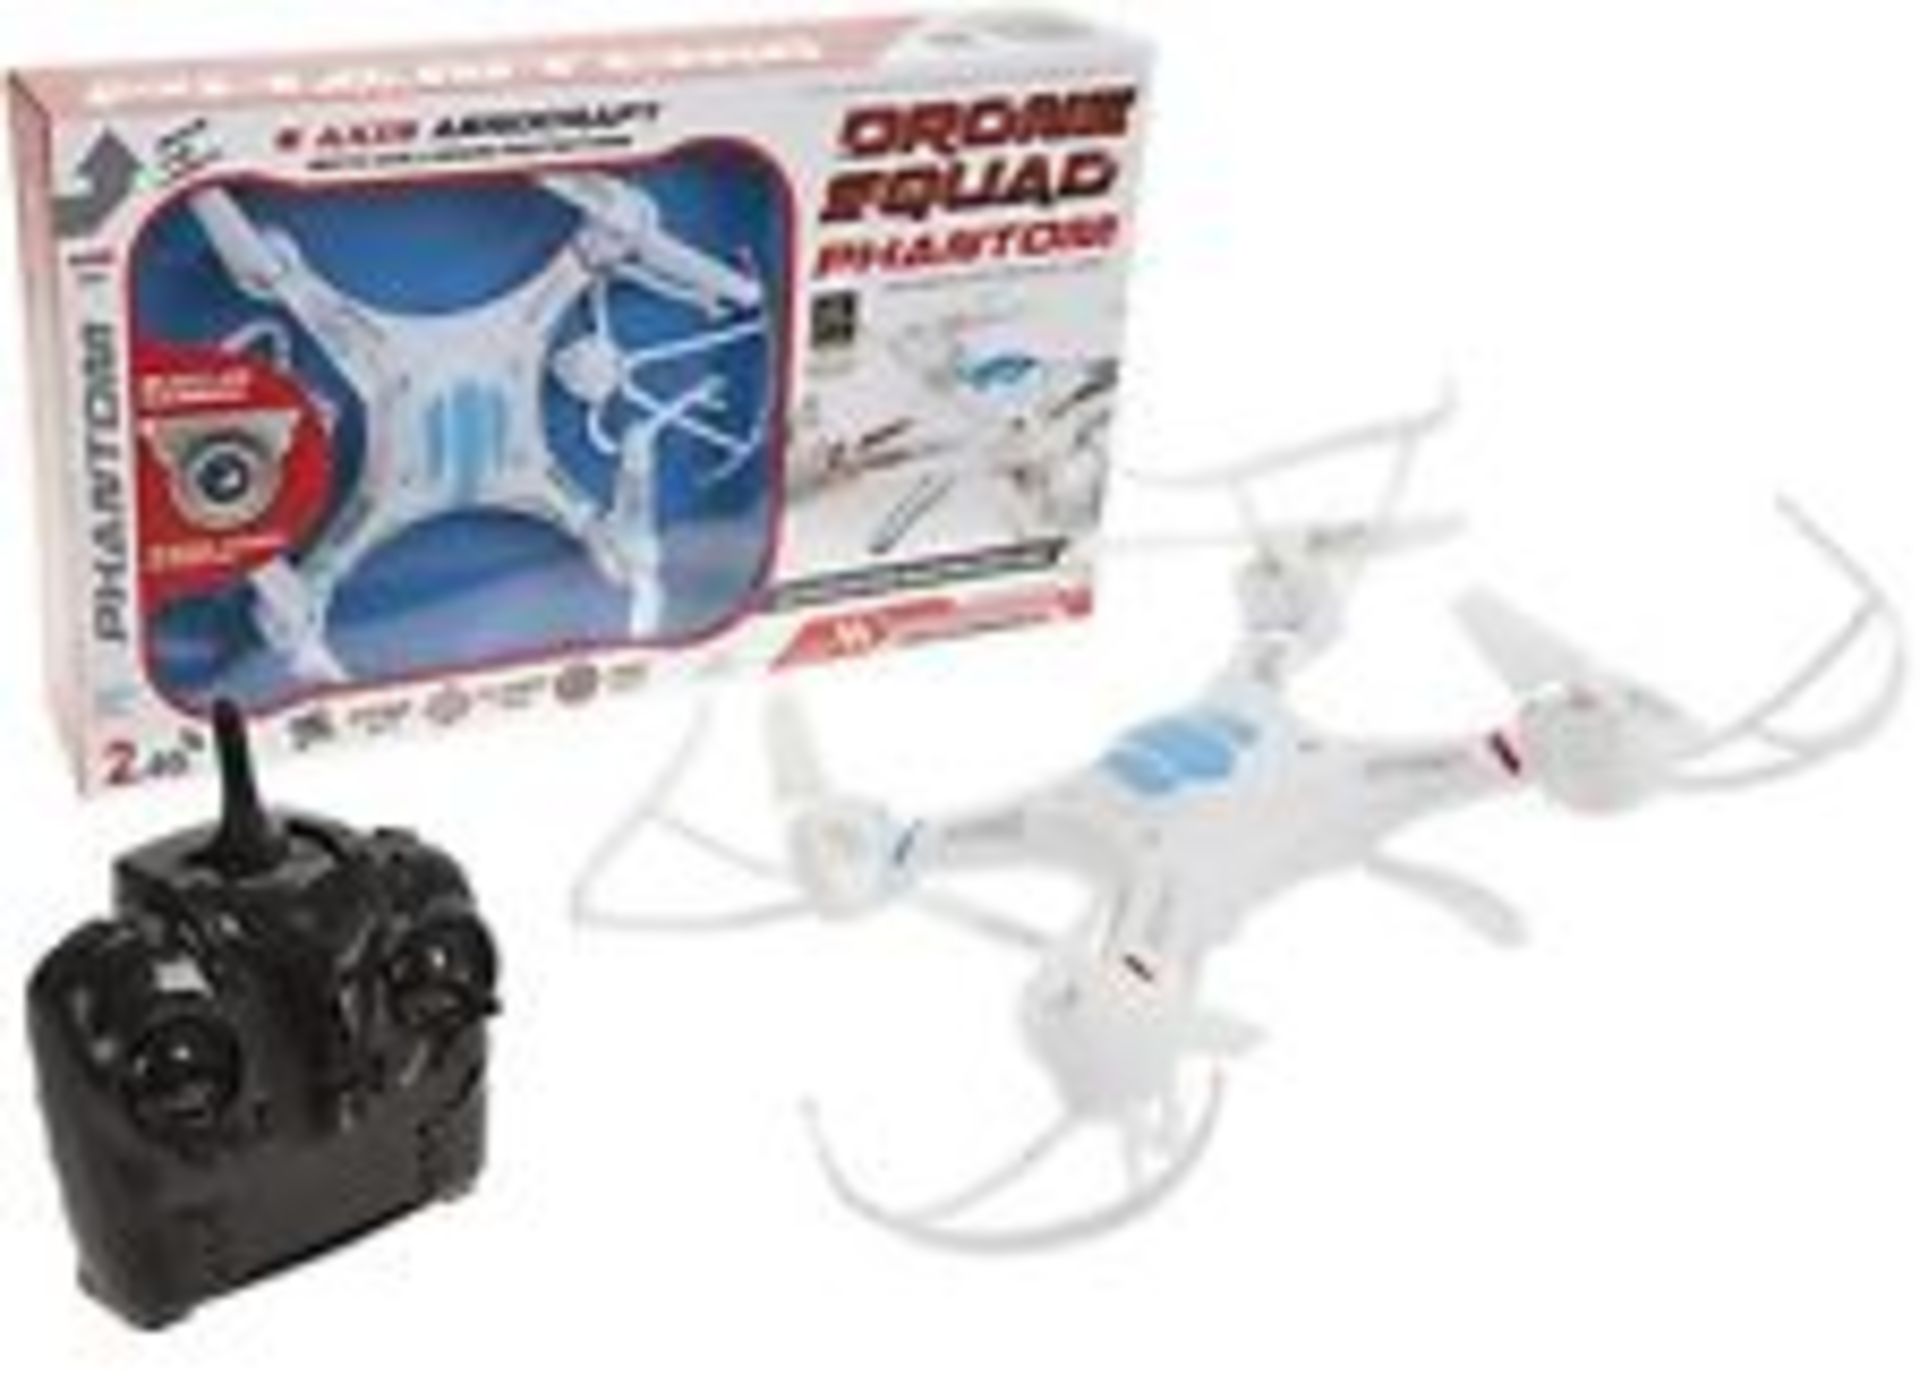 V *TRADE QTY* Brand New Drone Squad Phantom Quadcopter Flight Comprehensive With 360 Degree Rotation